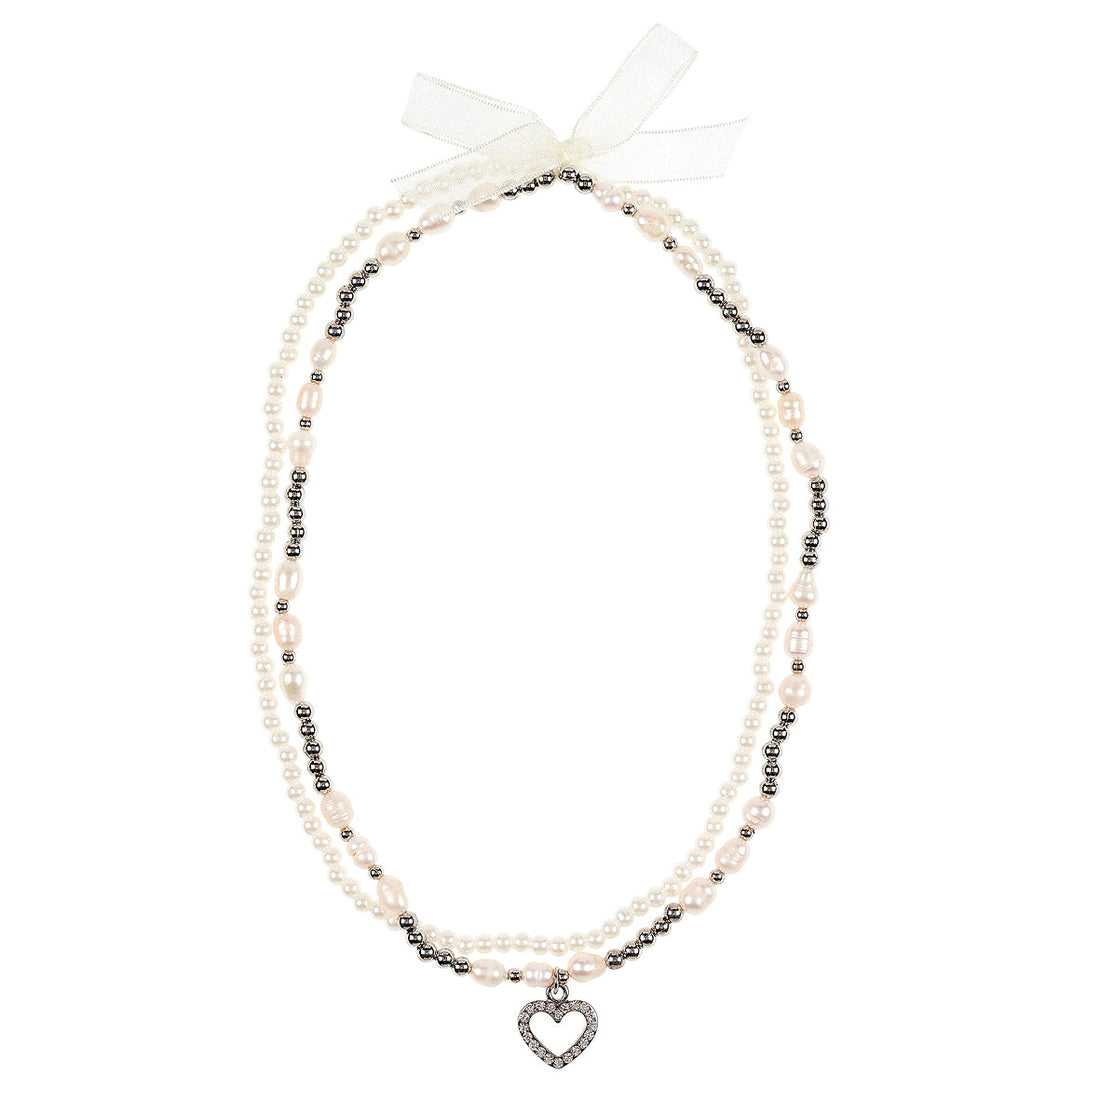 souza-necklace-bliss-pearls-souz-106968